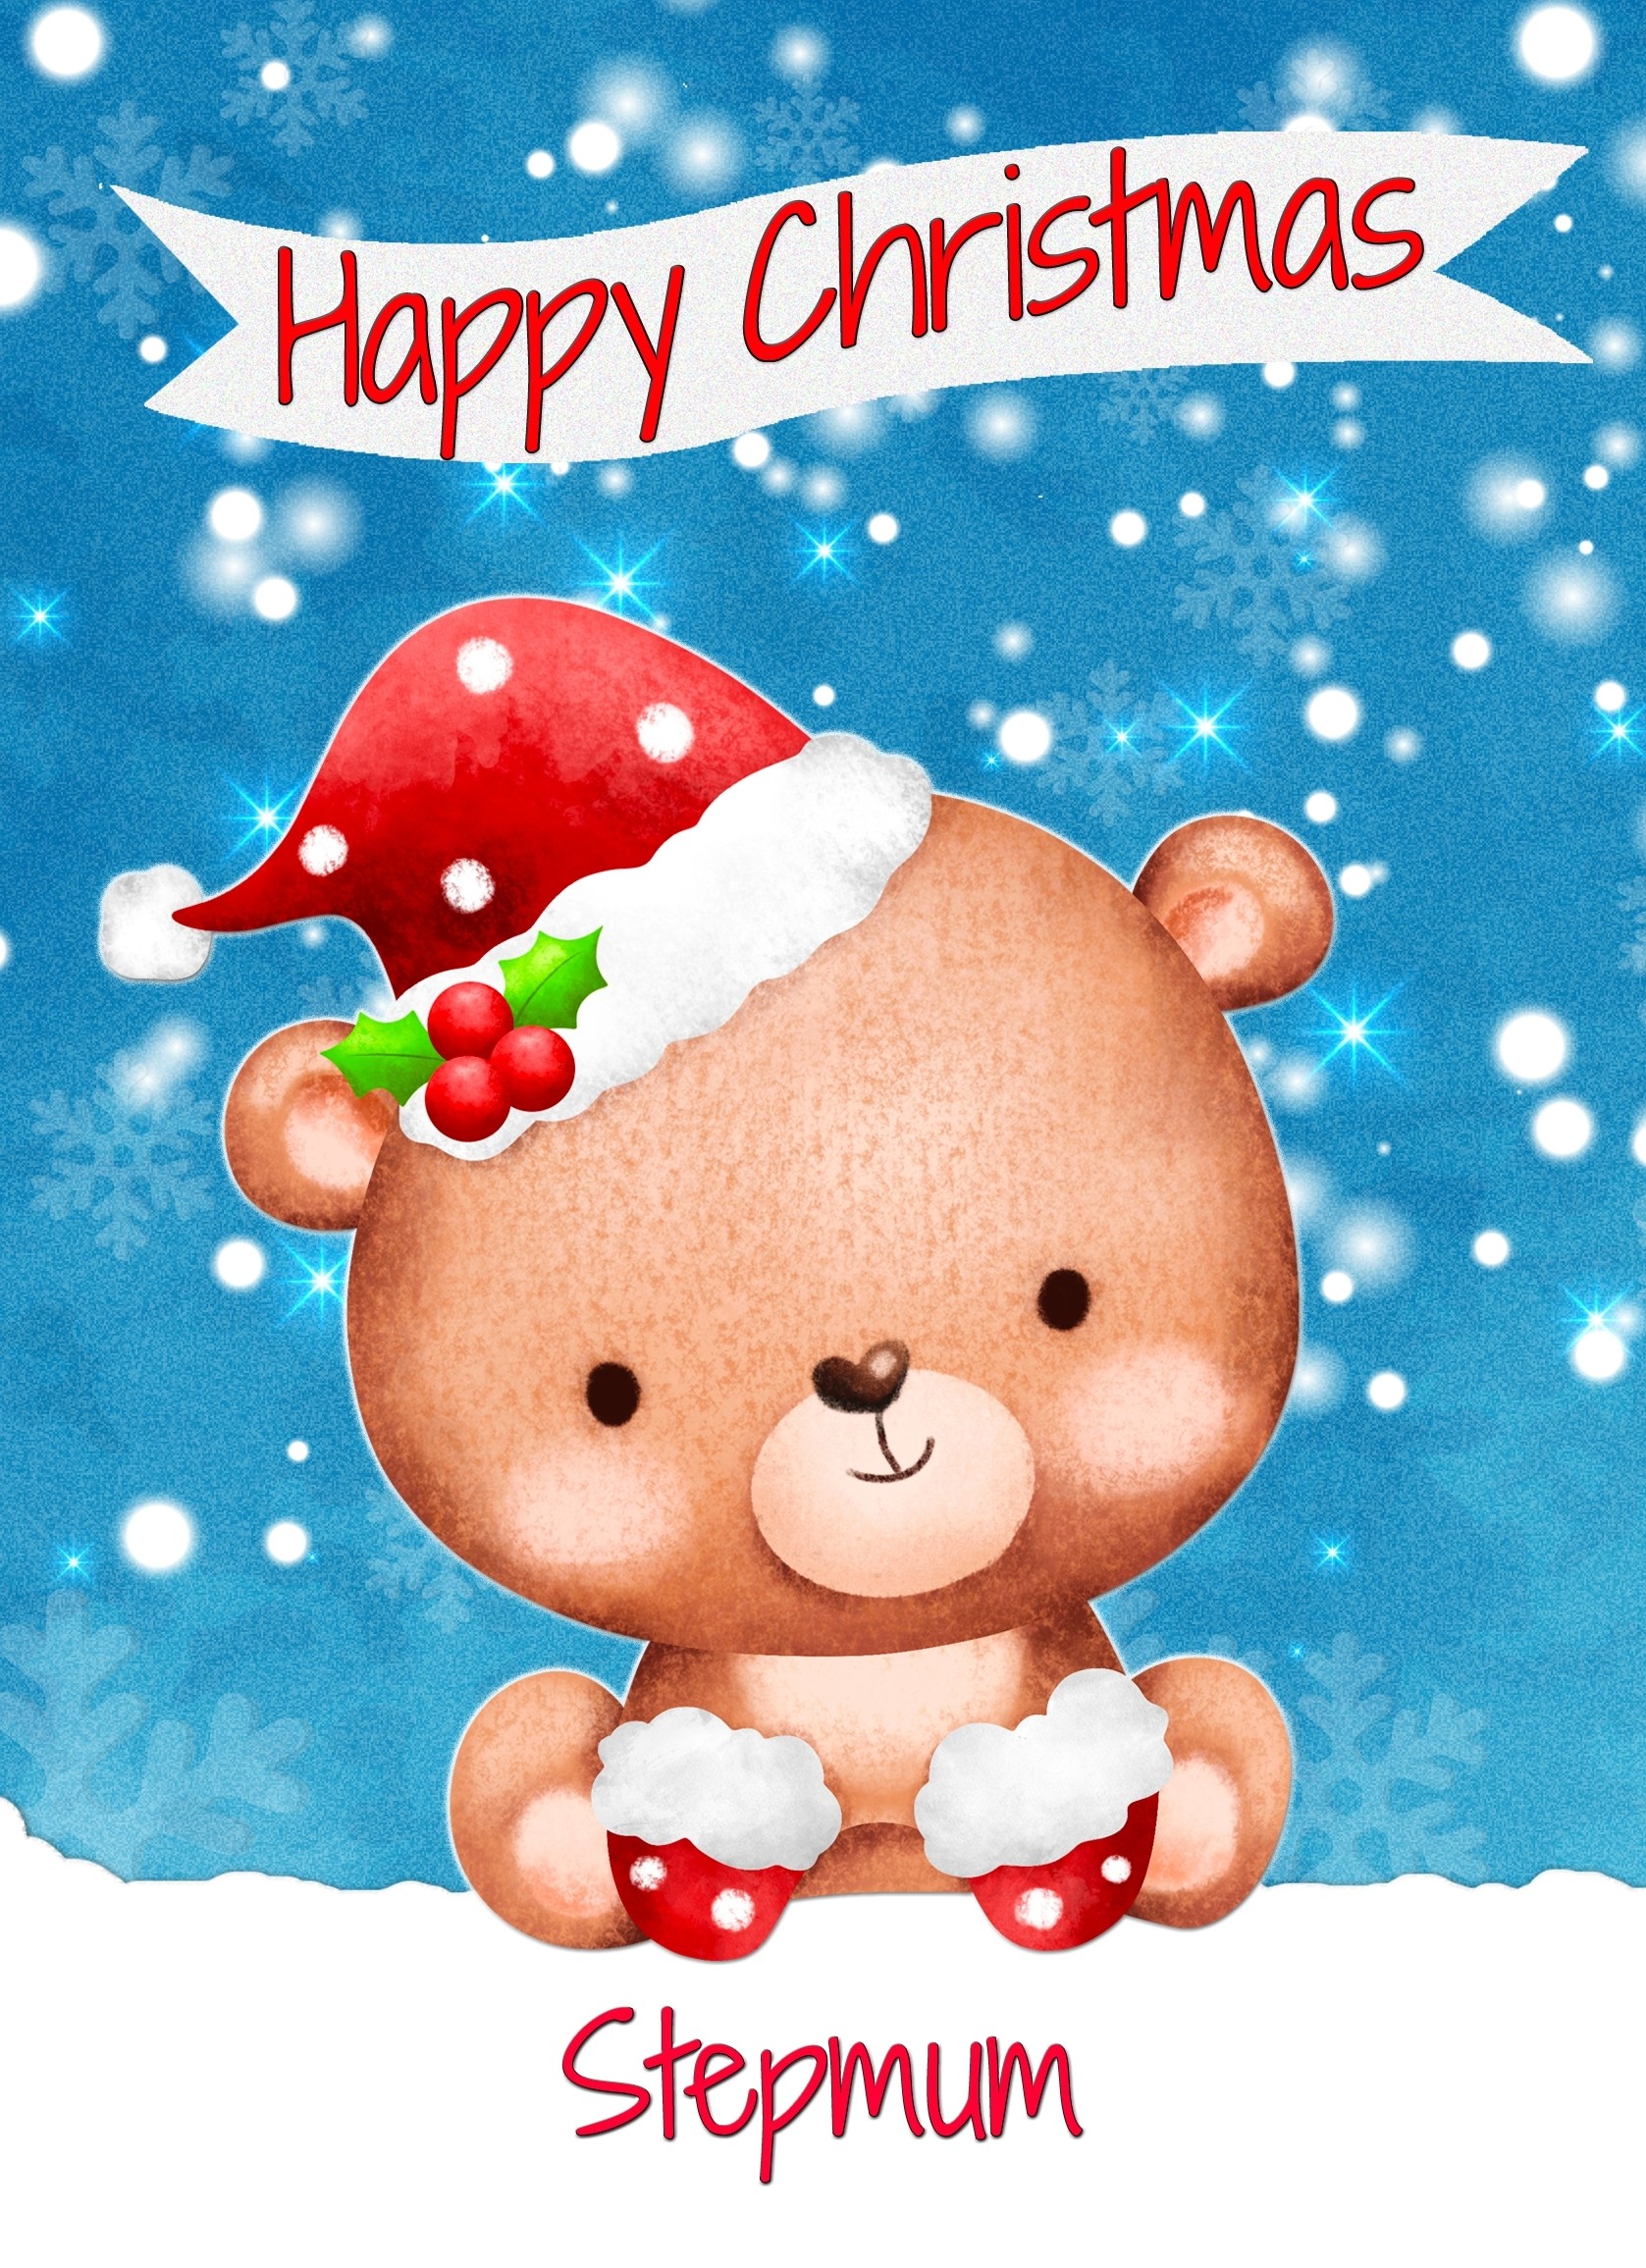 Christmas Card For Stepmum (Happy Christmas, Bear)